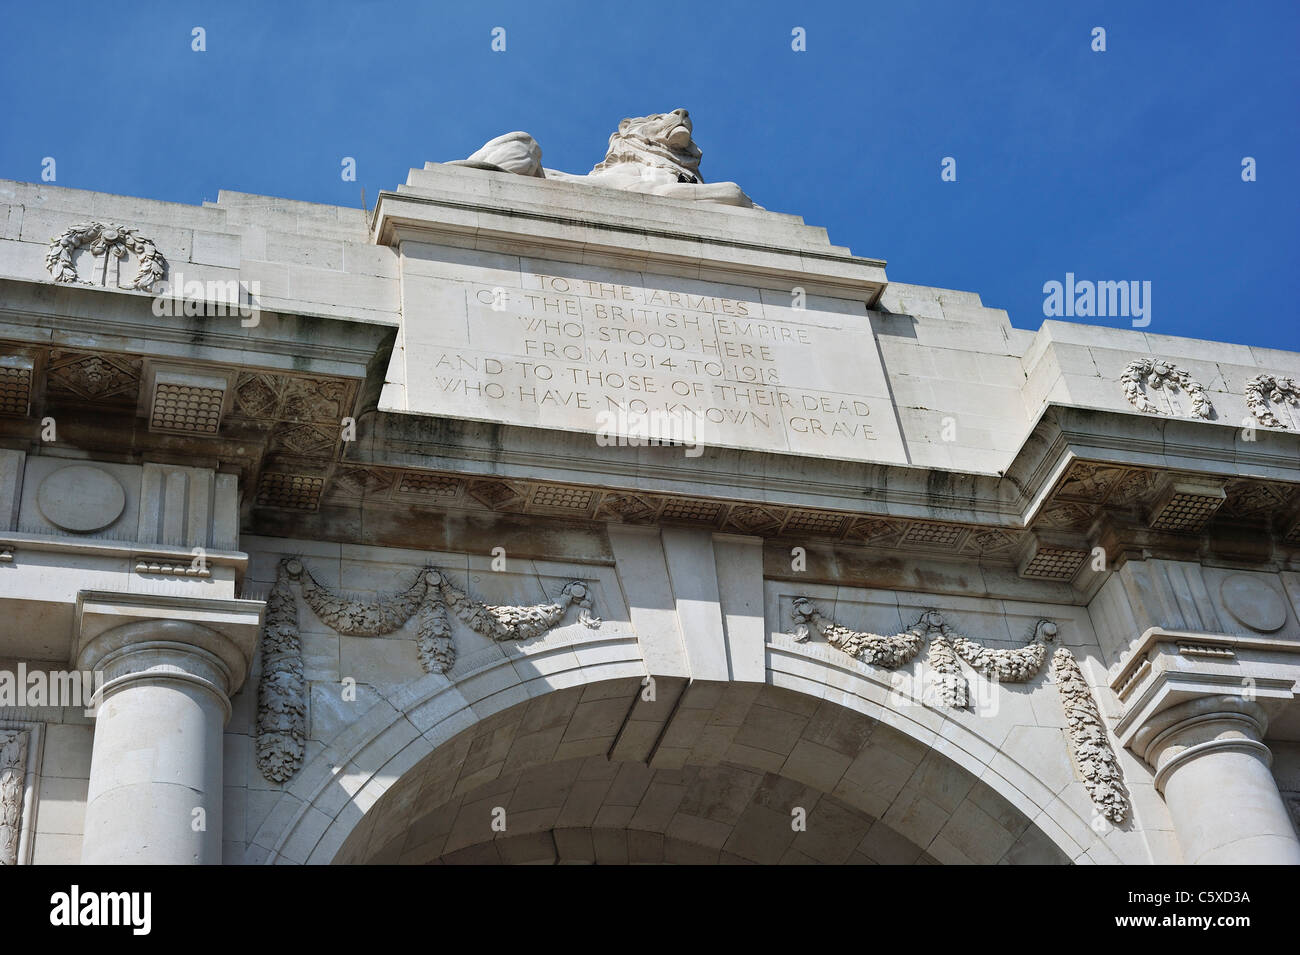 Porte de Menin mémorial aux disparus en commémoration des soldats britanniques et du Commonwealth de la Première Guerre mondiale, Ypres, Belgique Banque D'Images